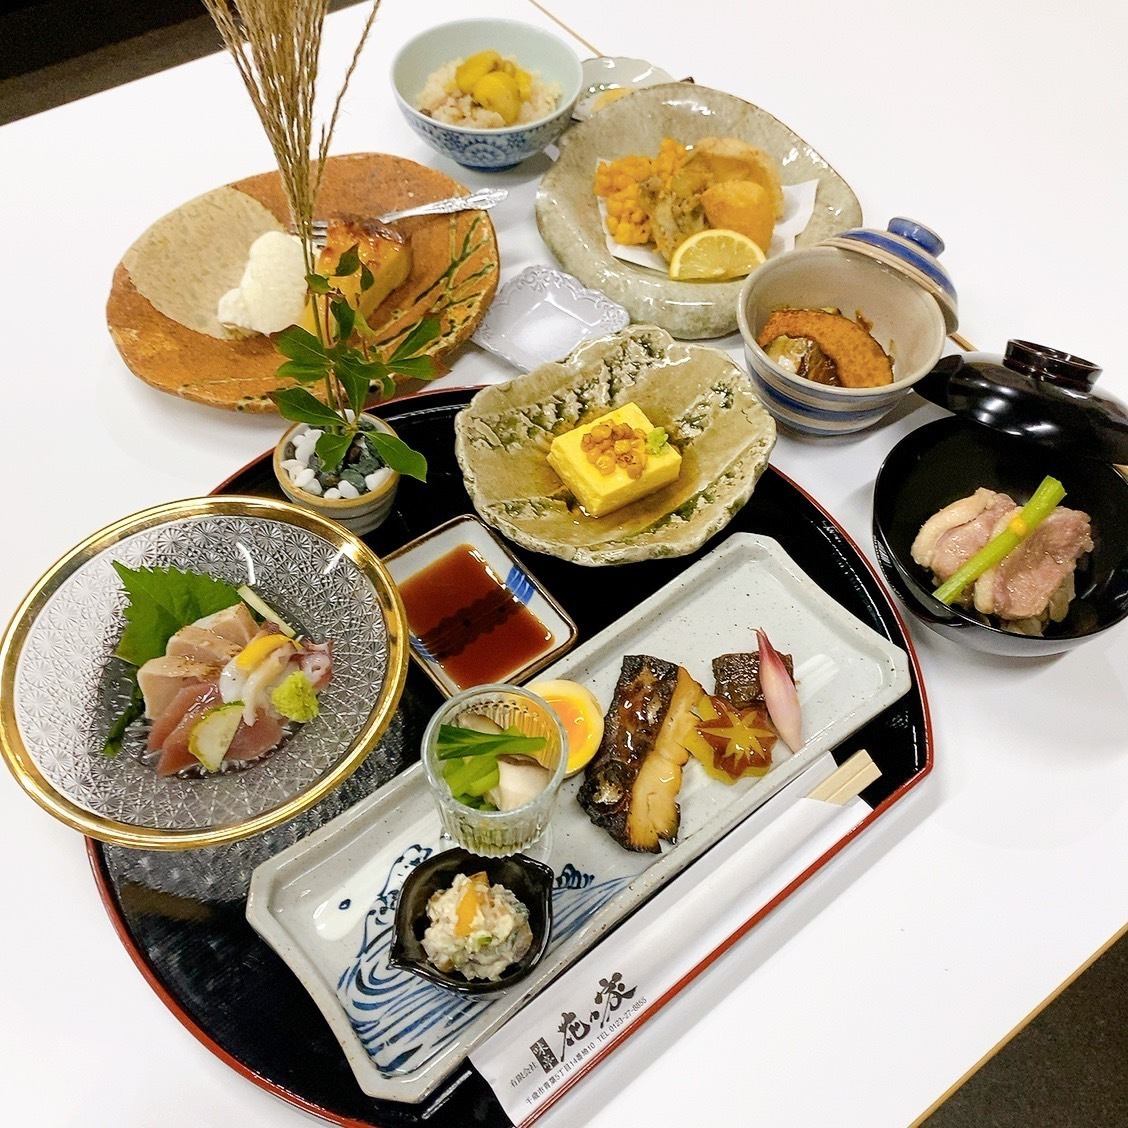 享受您想要的所有日本料理，包括海鲜、肉类和油炸食品。